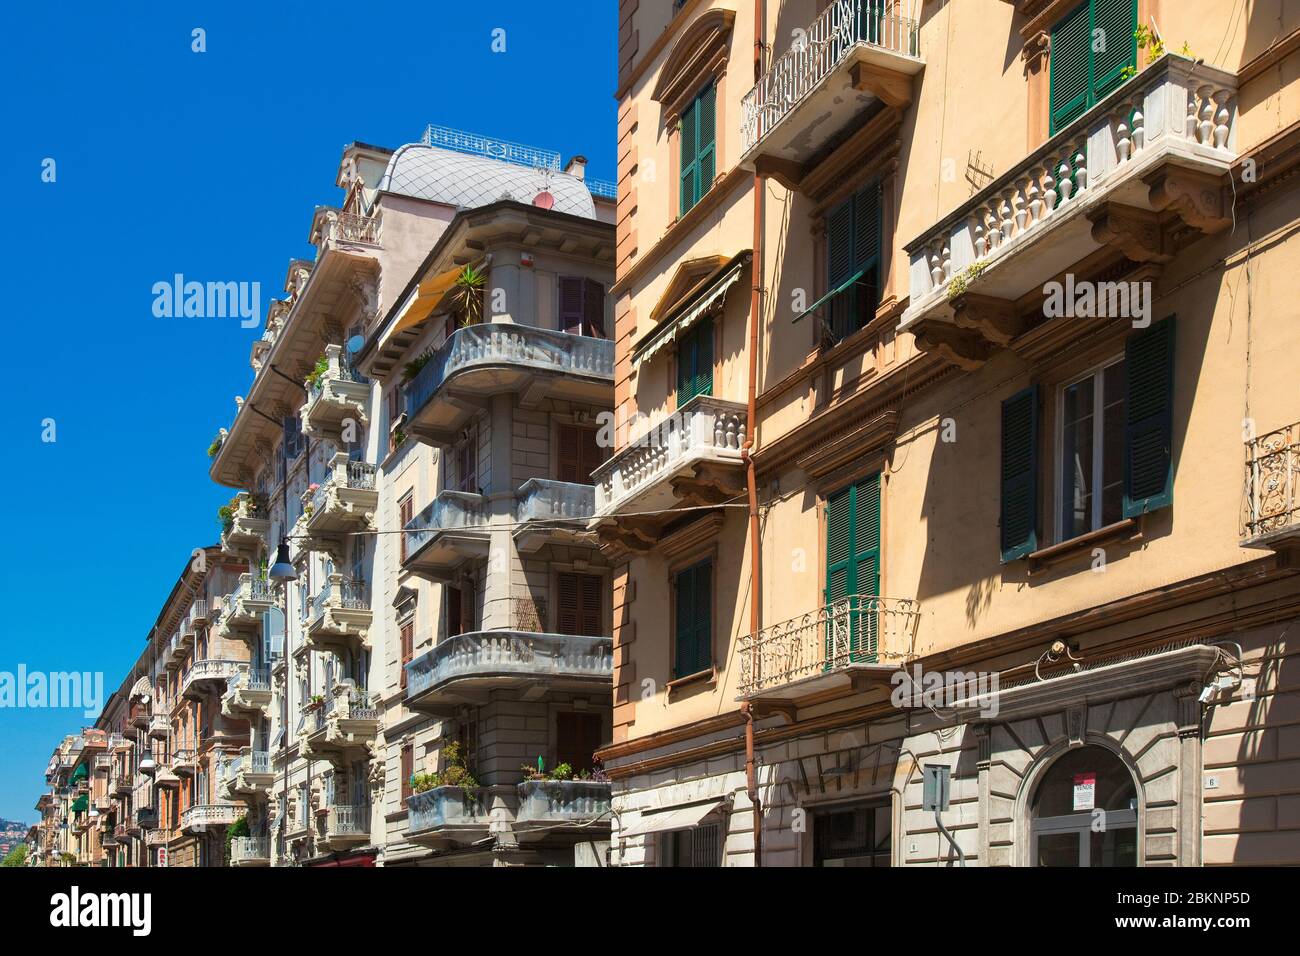 Italy, Liguria, La Spezia - Beautiful Urban Archirecture Stock Photo